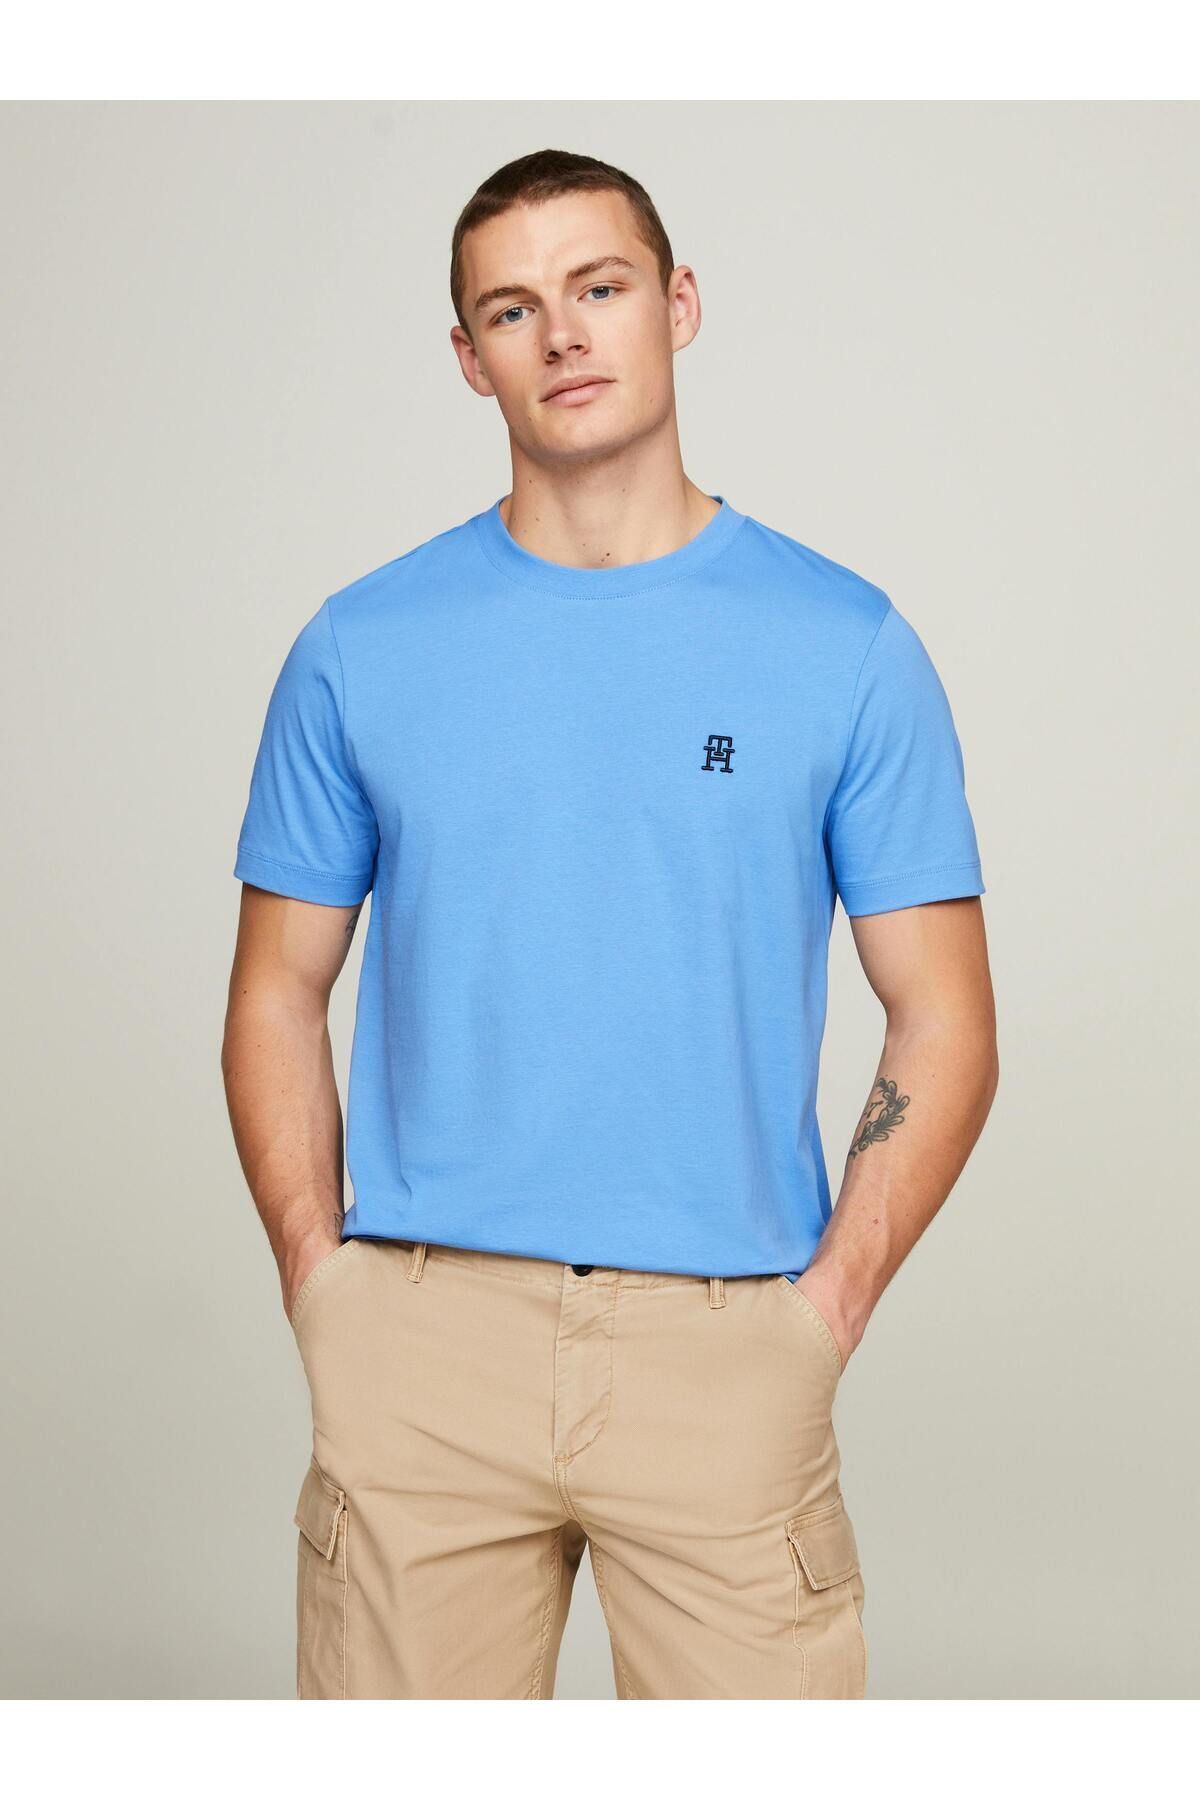 Tommy Hilfiger Erkek Dokuma Kumaş Kısa Kol Düz Model Mavi T-Shirt MW0MW33987-DW5